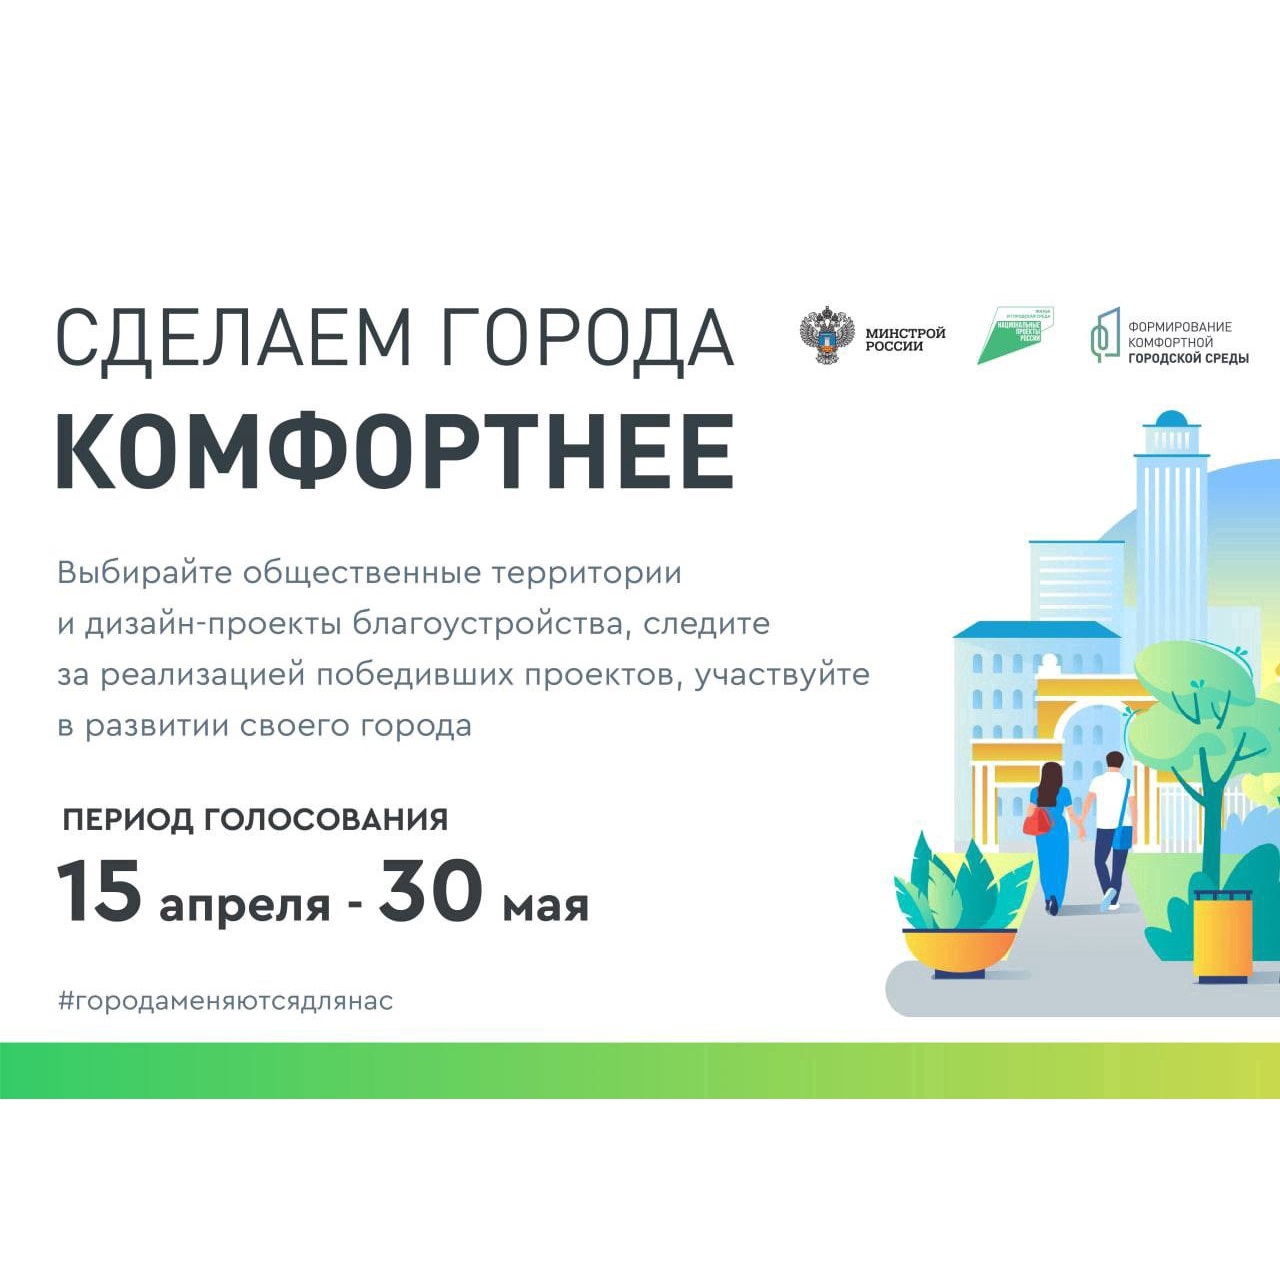 Жители Ульяновской области смогут выбрать проекты благоустройства парков и скверов на 2023 год в режиме онлайн.